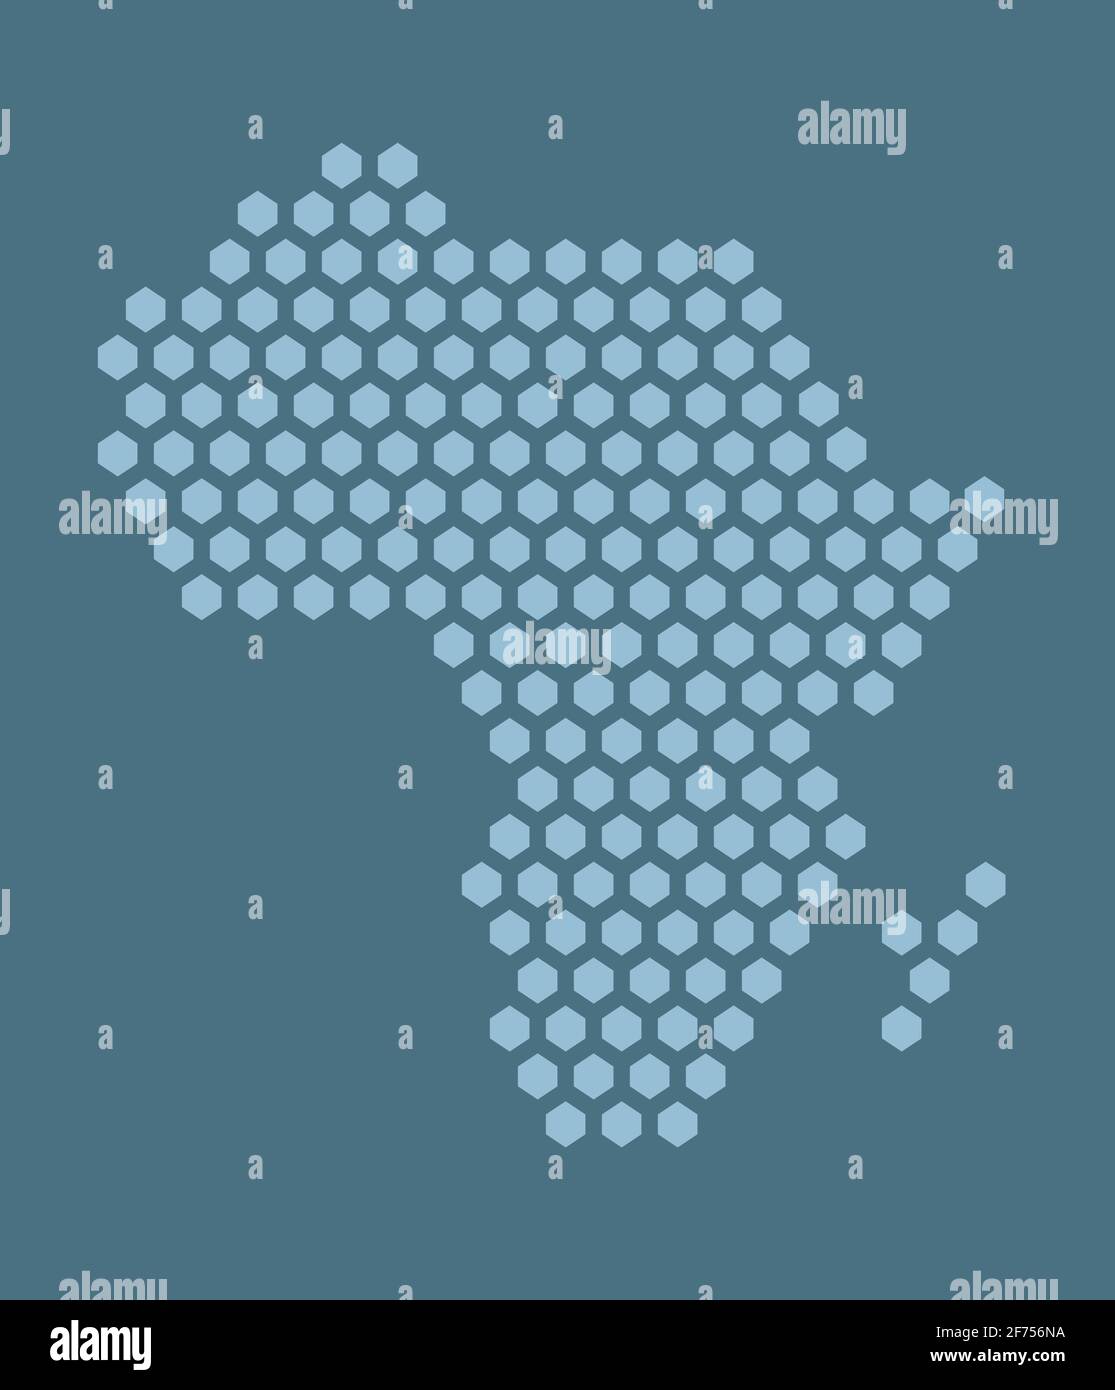 Blaue sechseckige Pixelkarte von Afrika. Vektor-Illustration Afrikanischer Kontinent Sechskantkarte gepunktetes Mosaik. Verwaltungsgrenze, Landzusammensetzung. Stock Vektor